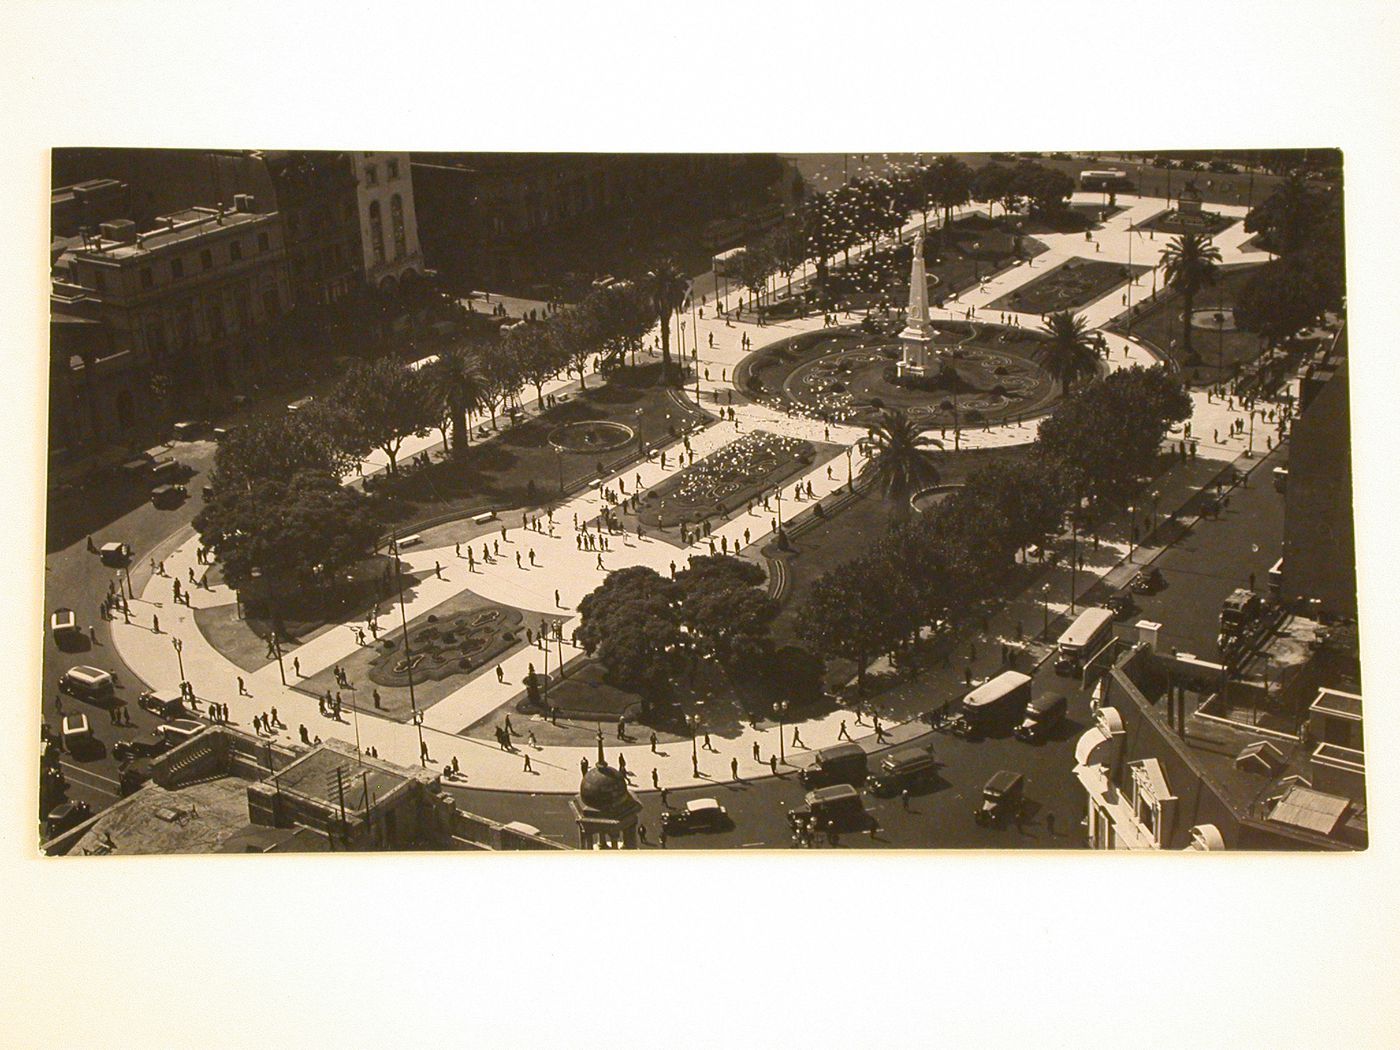 Aerial view of La Plaza de Mayo showing the Pirámide de Mayo, Buenos Aires, Argentina